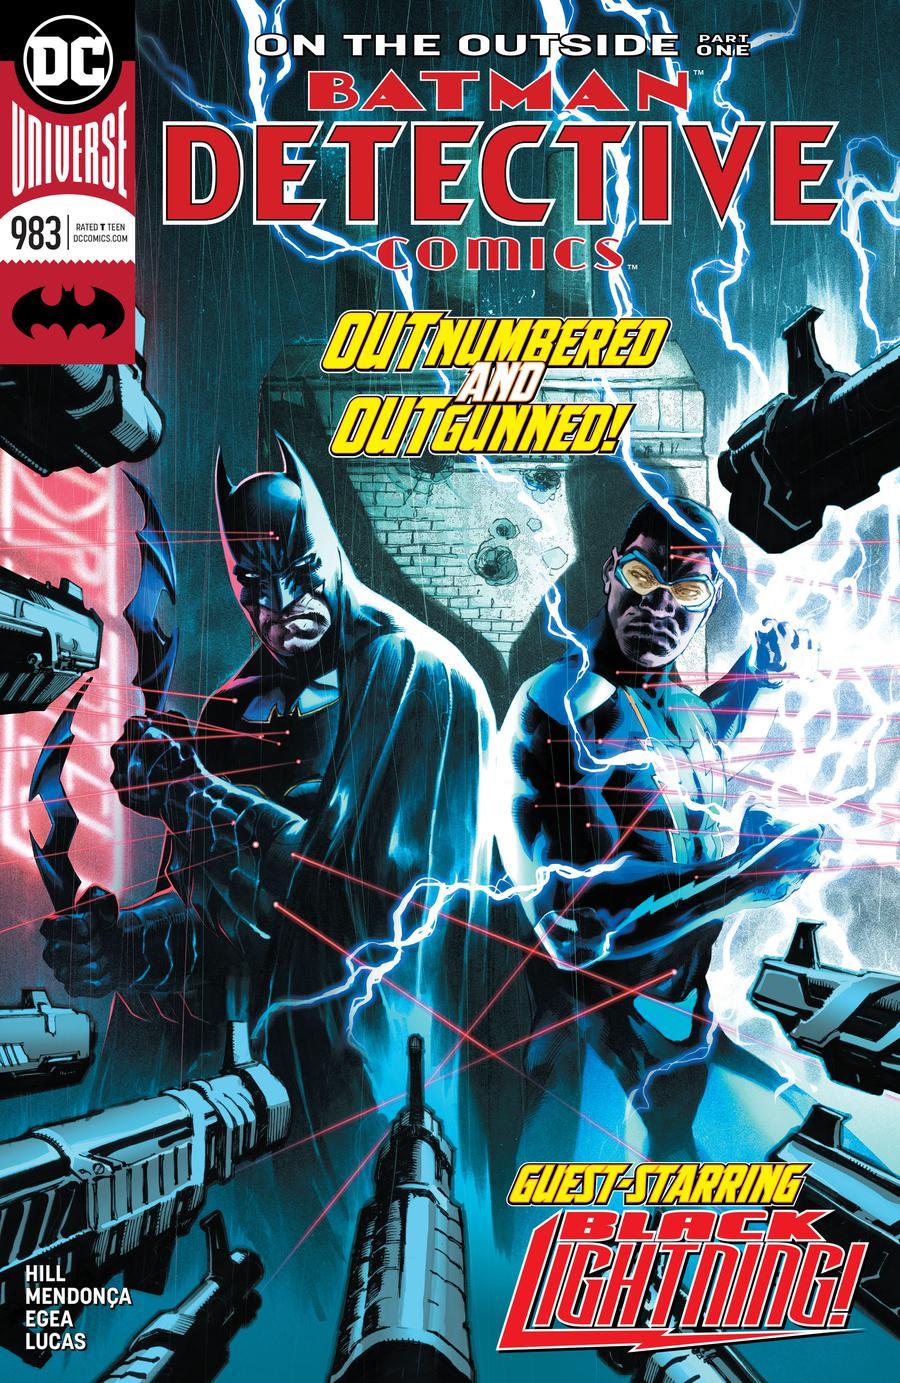 Detective Comics Vol. 2 #983